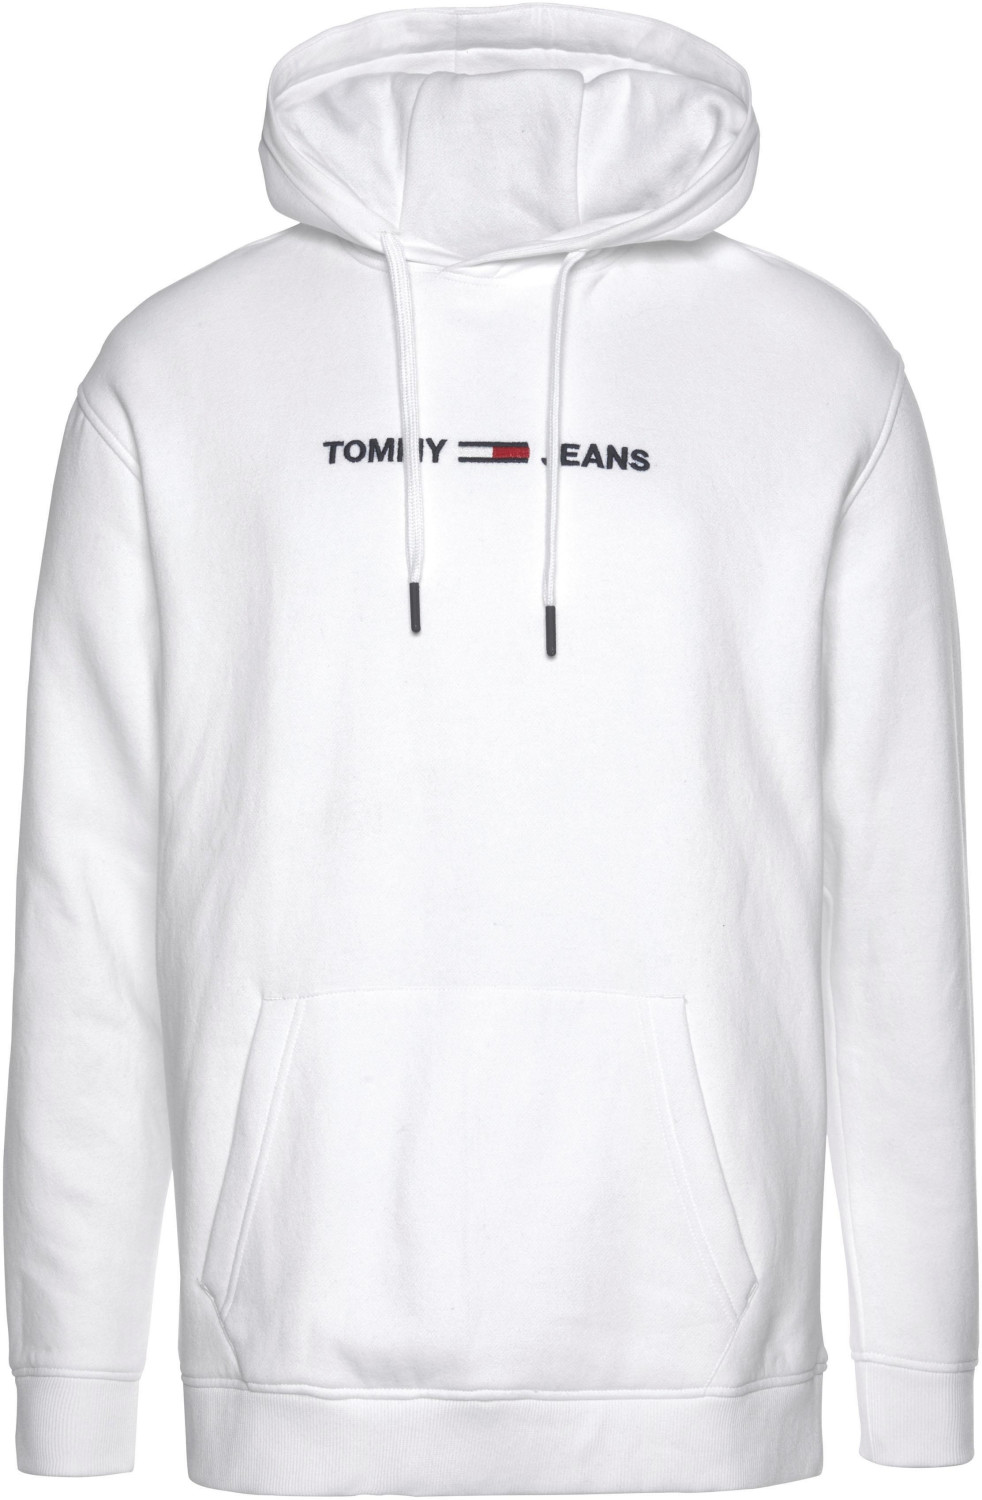 Tommy Hilfiger Hoodie mit Logo white (DM0DM05146-100)